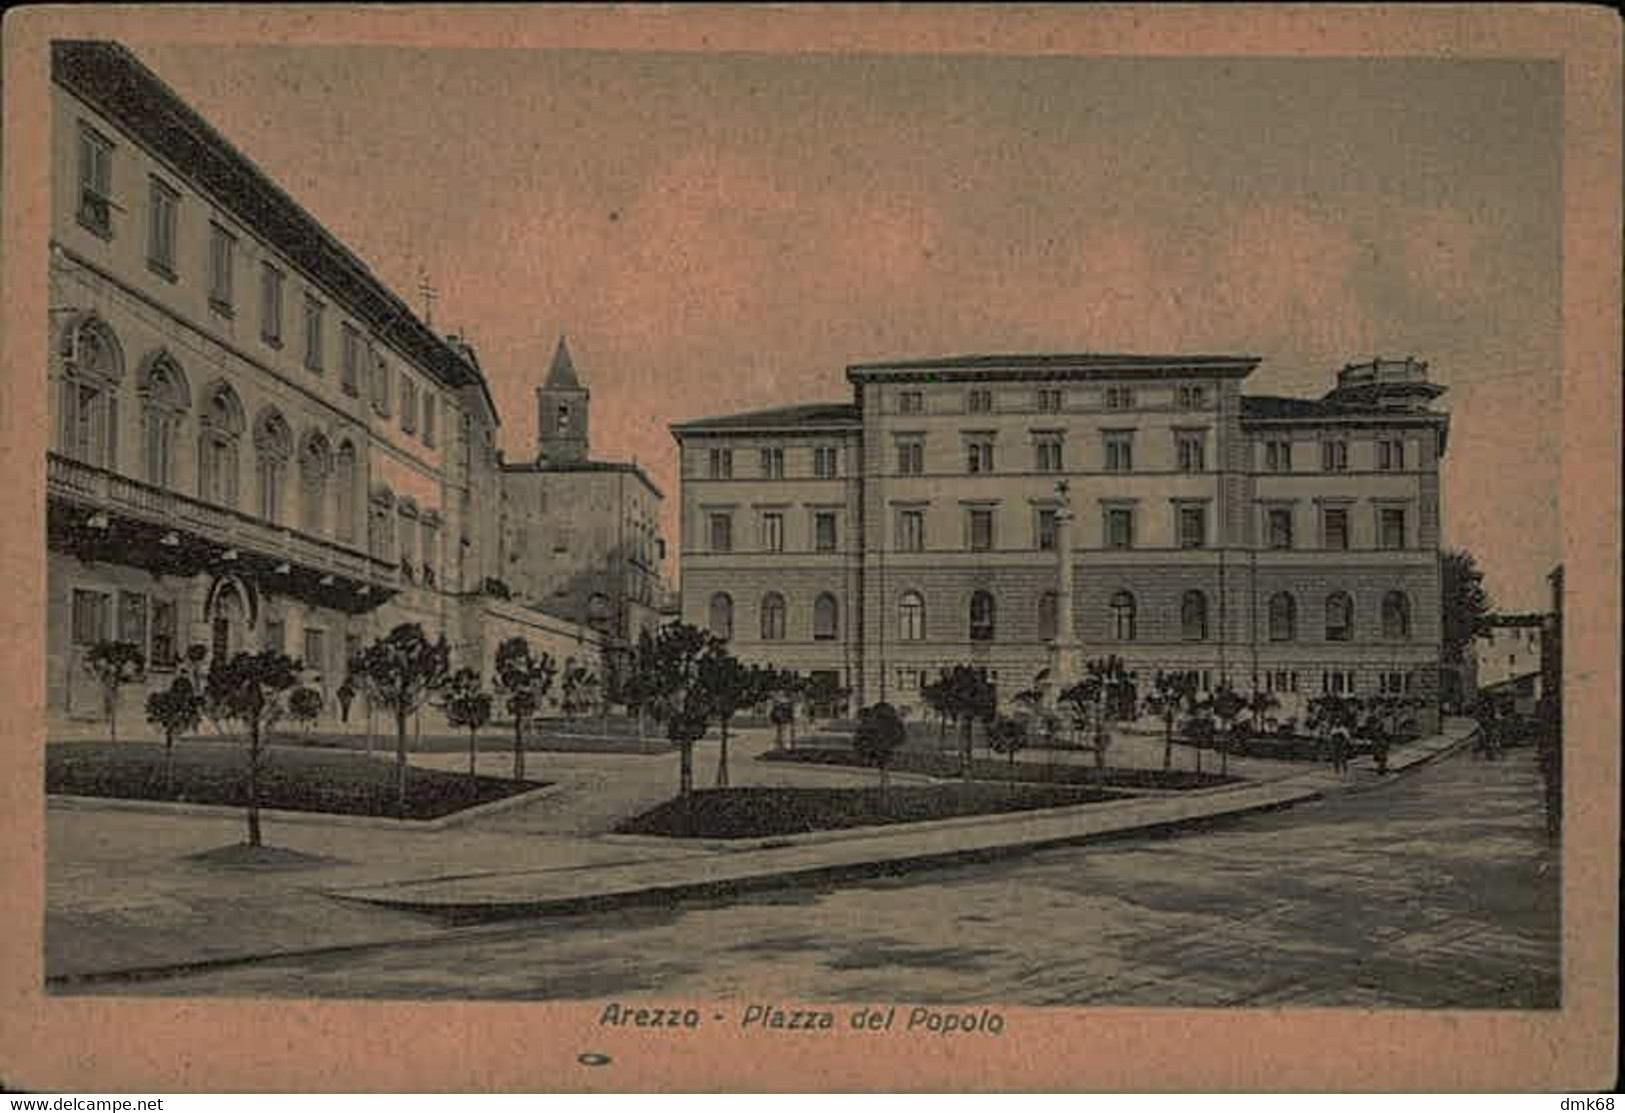 AREZZO - PIAZZA DEL POPOLO - EDIZ. DEI MARCO - 1930s (13273) - Arezzo